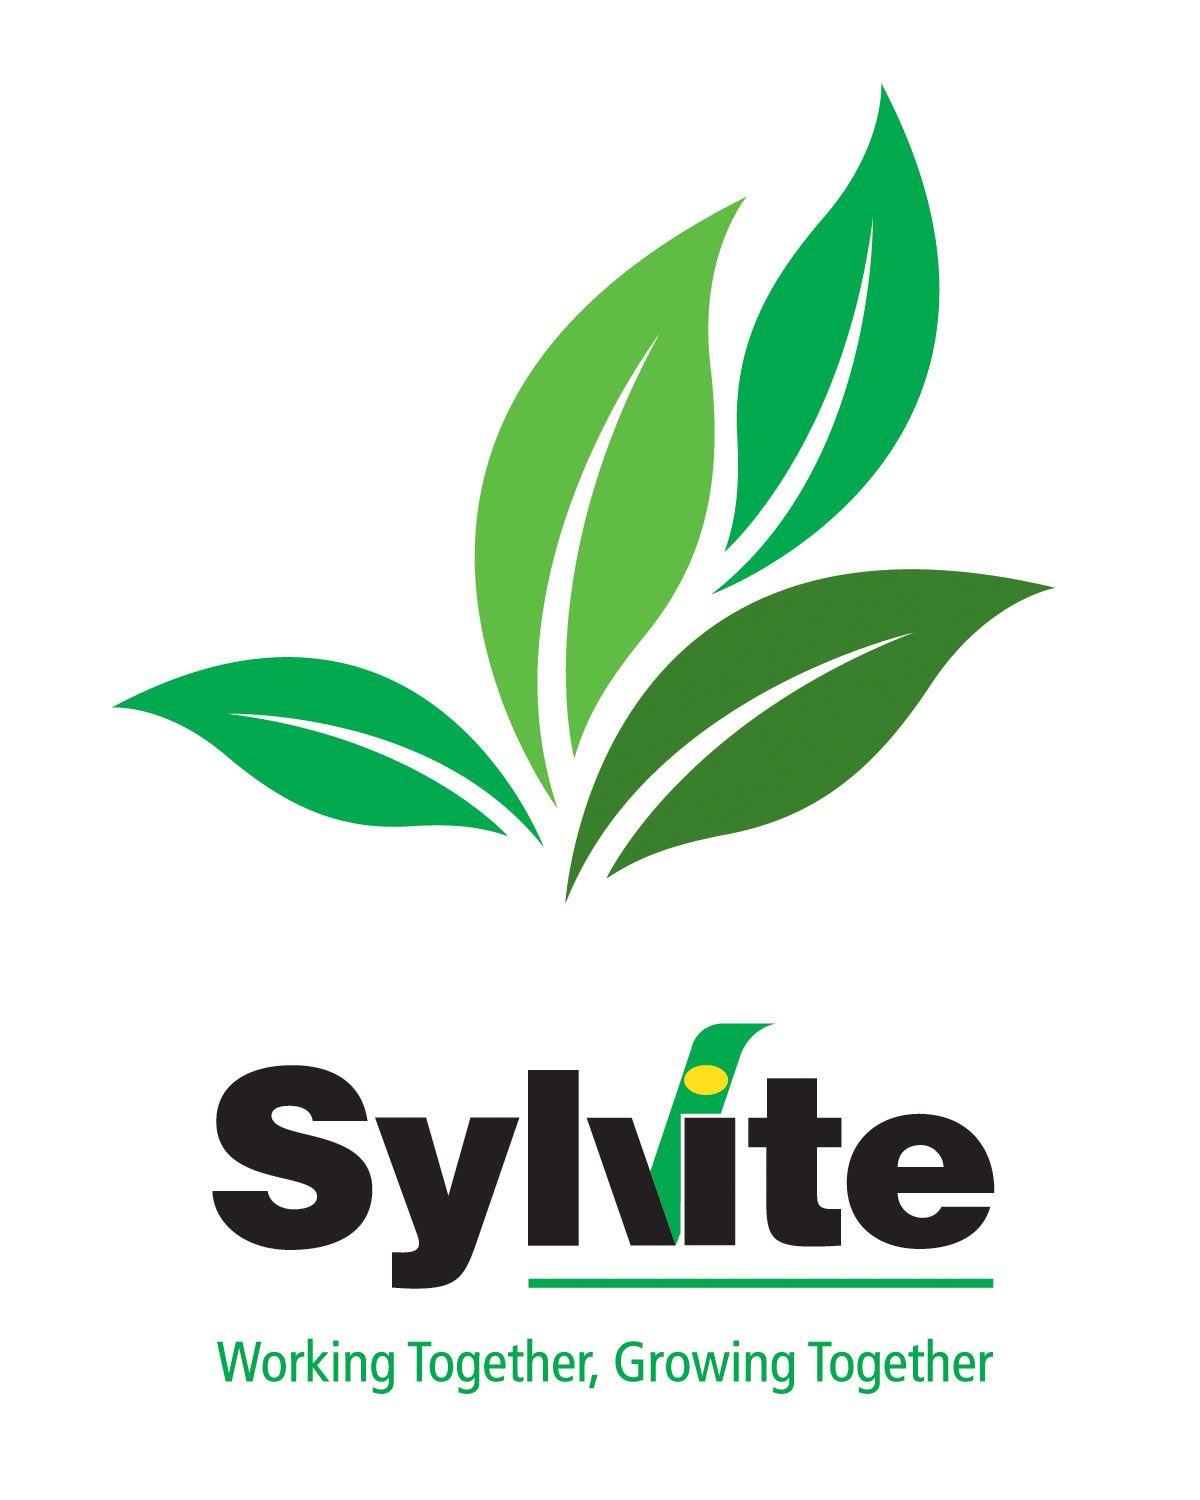 White Leaf Logo - Sylvite Logo (leaves) on white RGB. Golden Horseshoe Soil & Crop